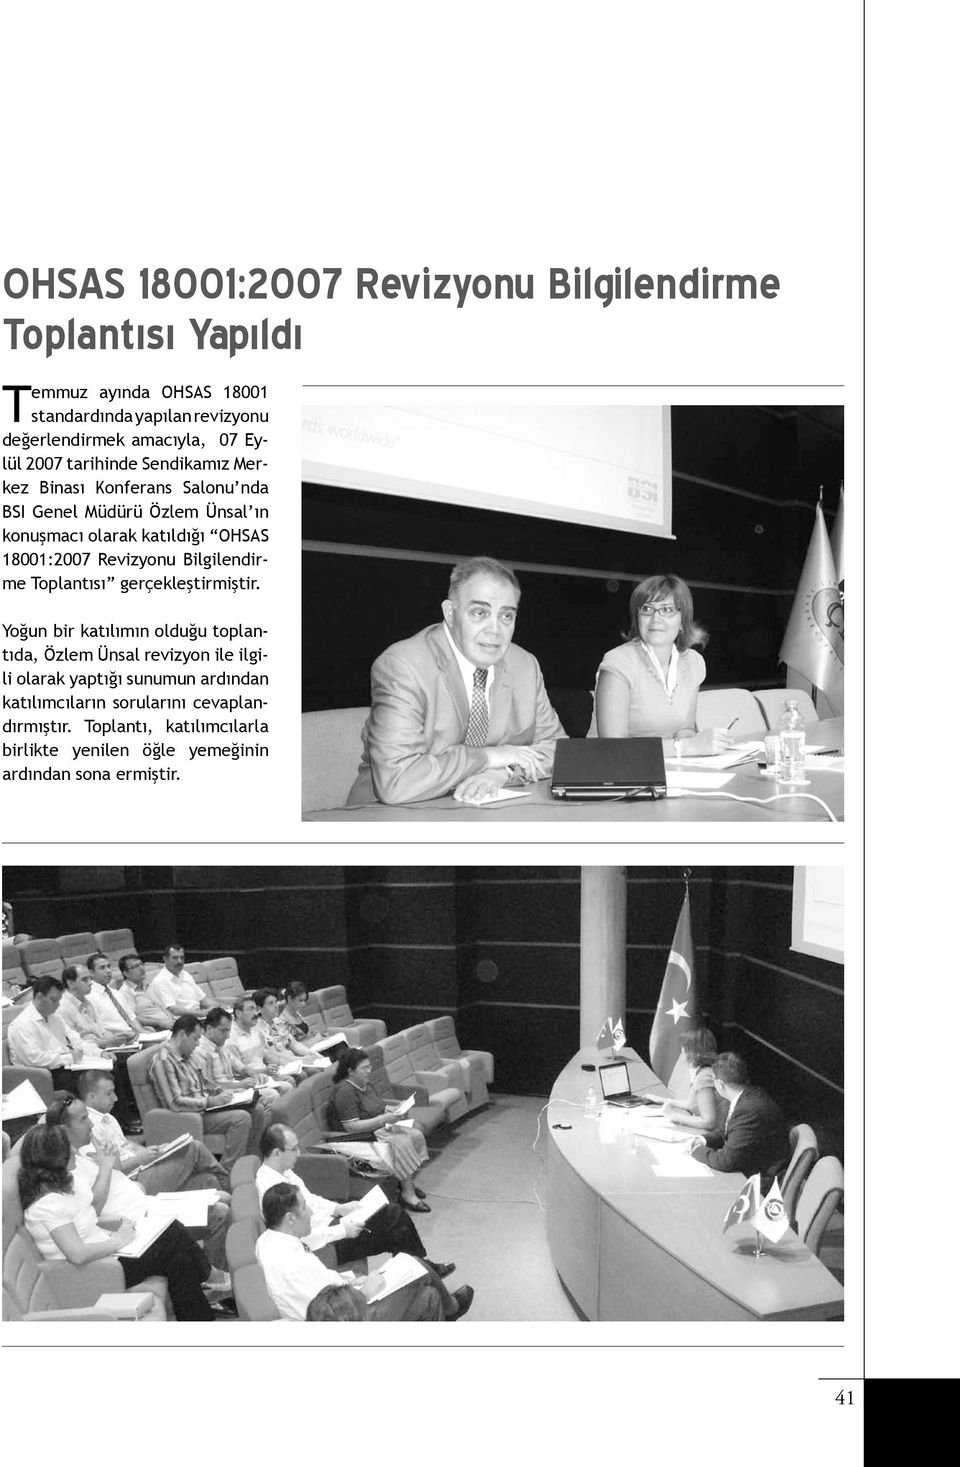 18001:2007 Revizyonu Bilgilendirme Toplantısı gerçekleştirmiştir.